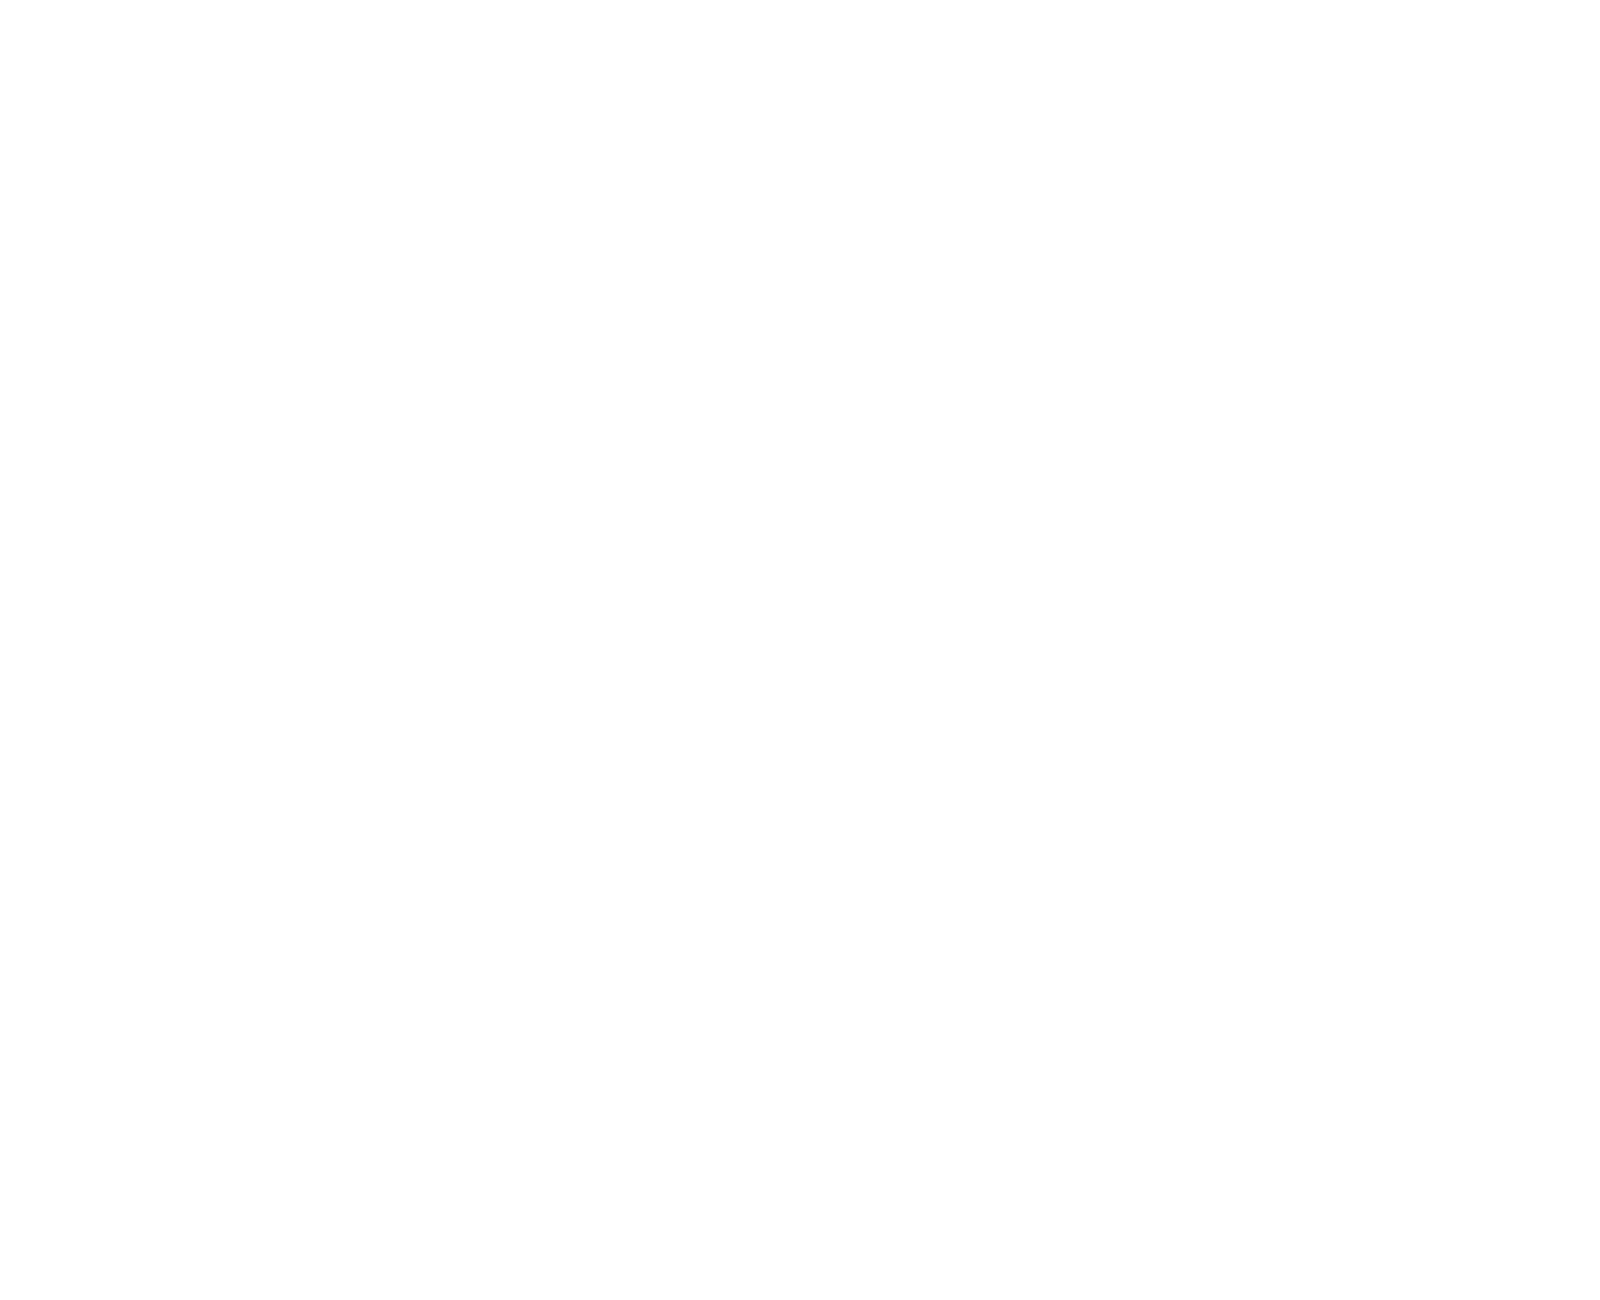 Serenity-Mansions-LOGO-white